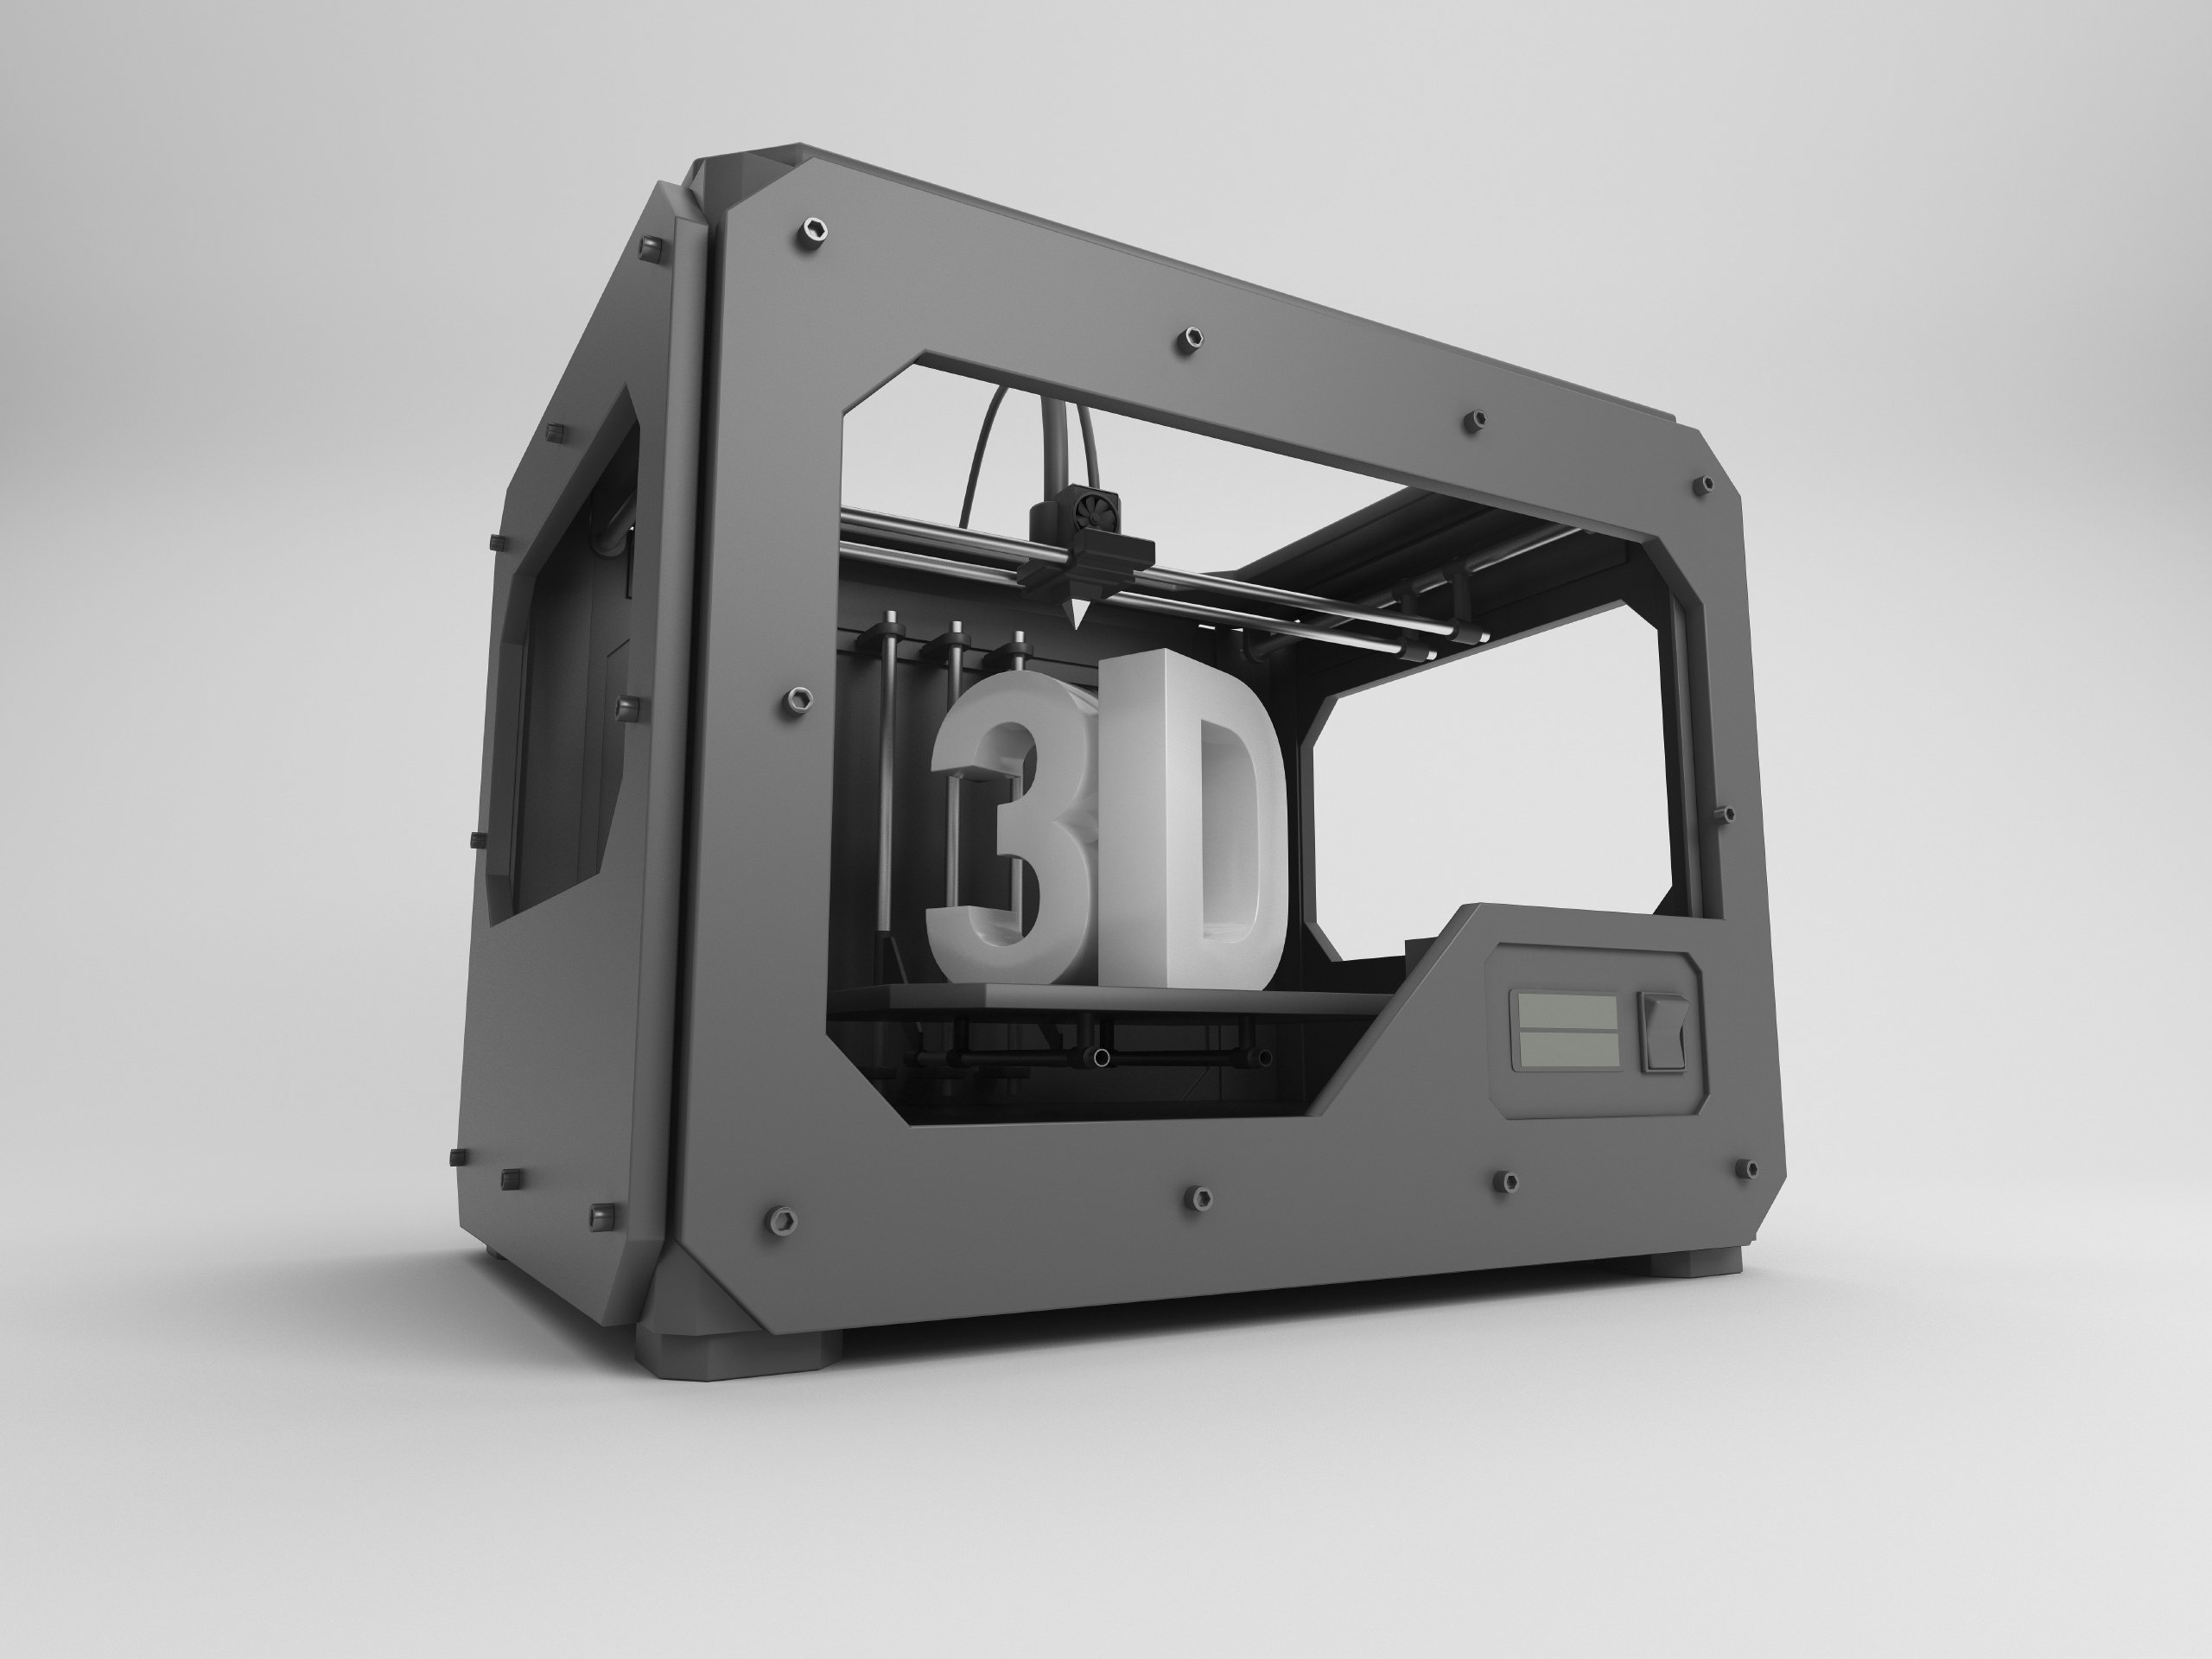 Impresión 3D: un nuevo panorama laboral